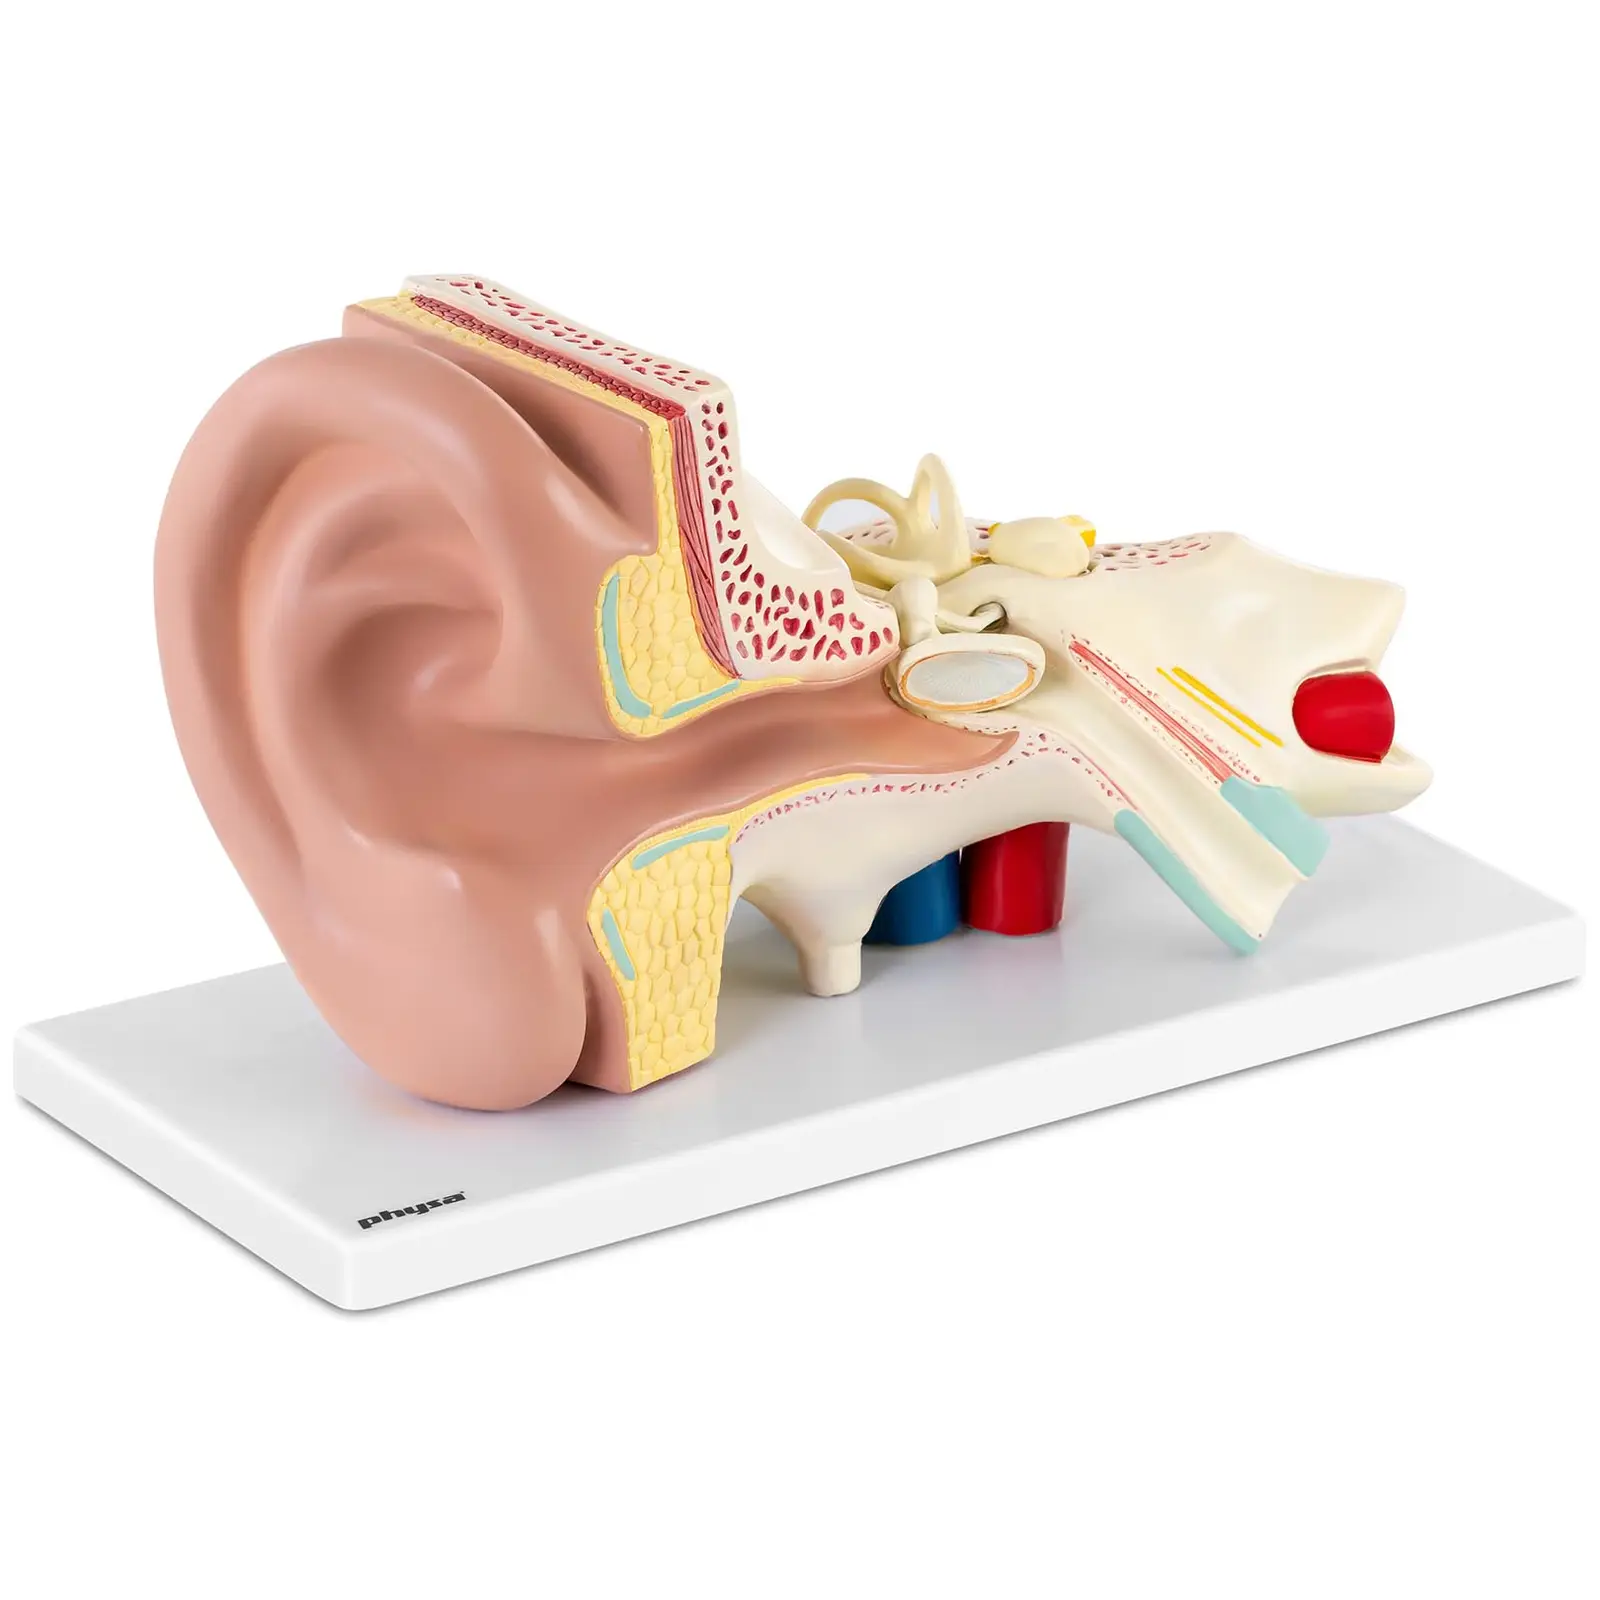 Ouvido - modelo anatómico - escala 3:1